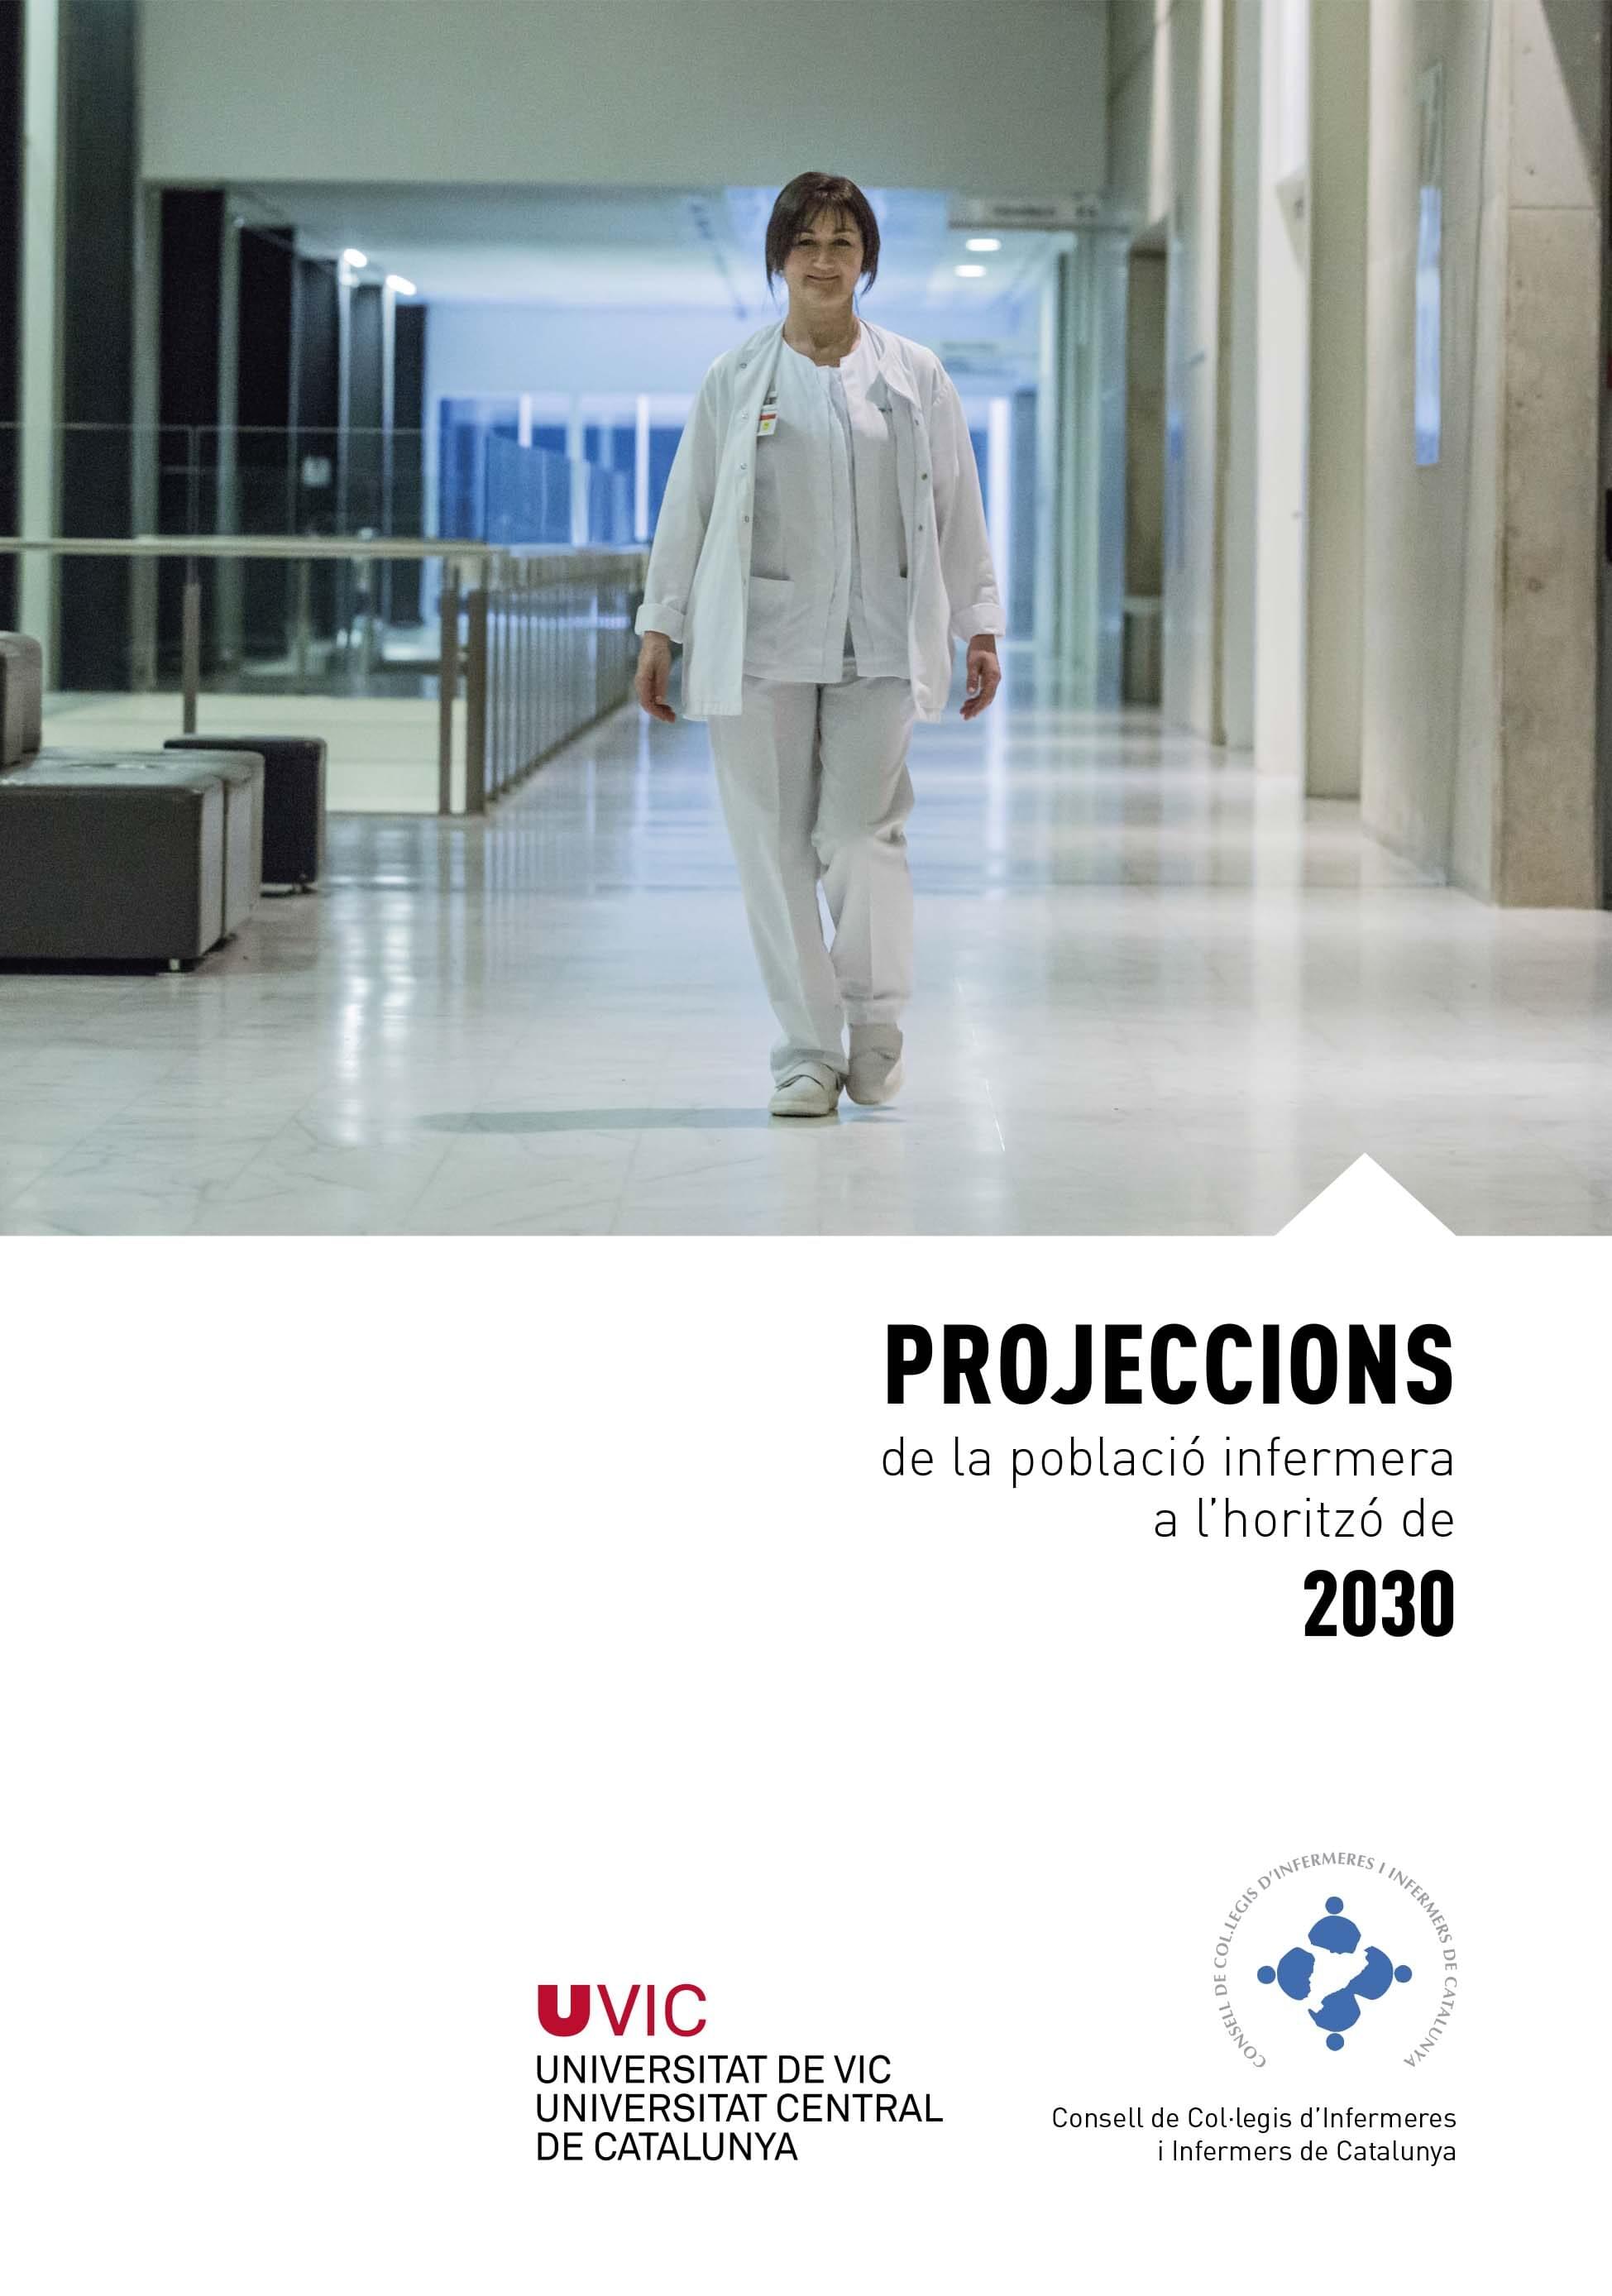 Projeccions de la població infermera a l'horitzó de 2030